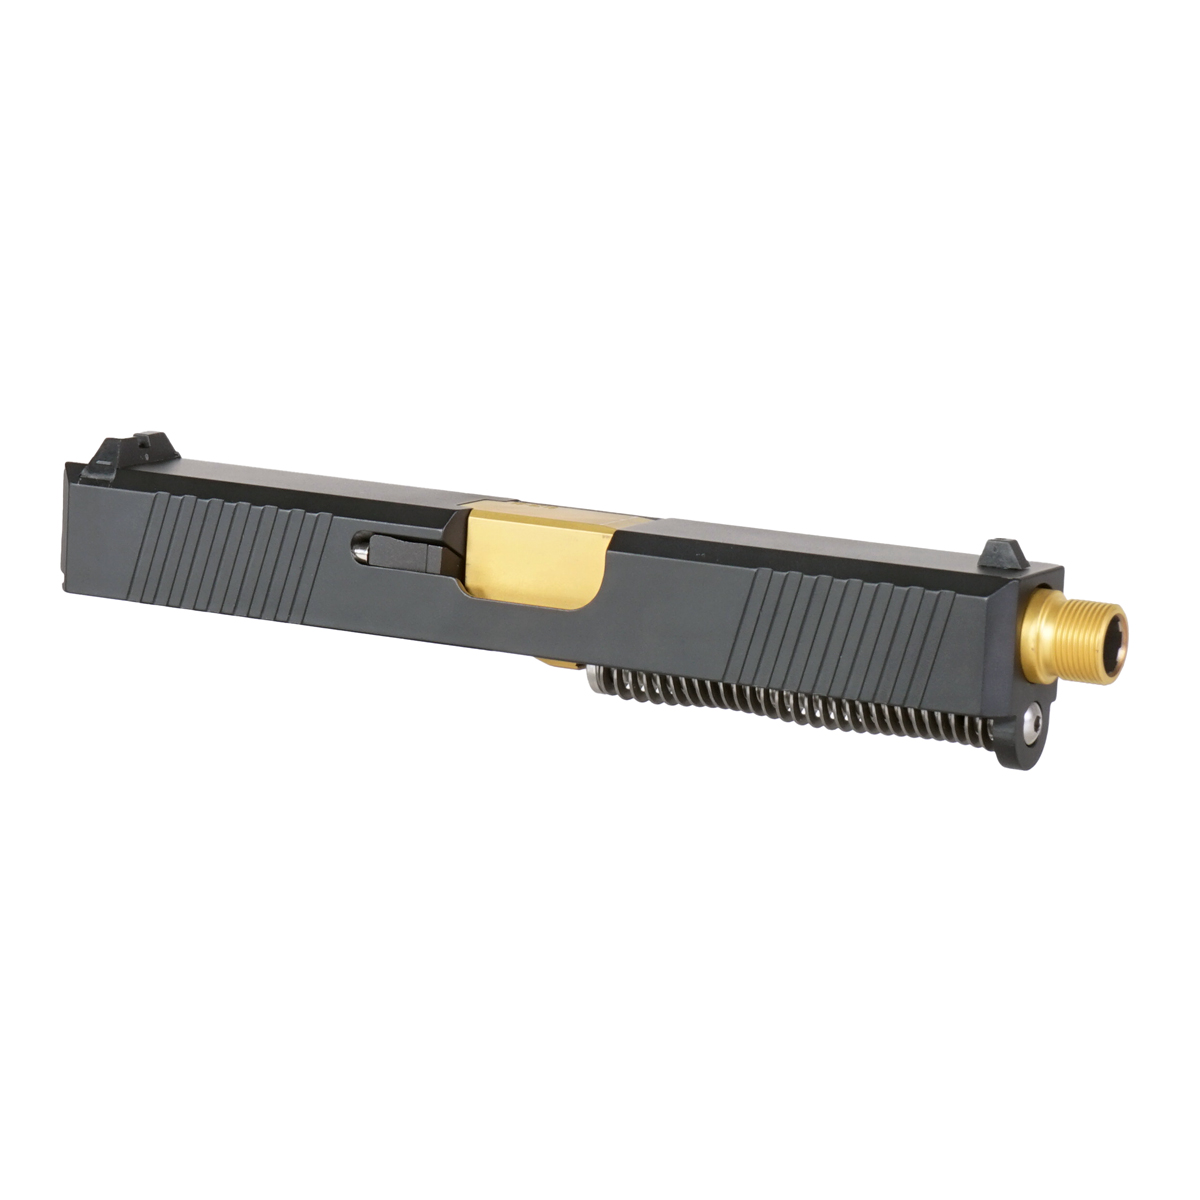 DTT 'Oakley' 9mm Complete Slide Kit - Glock 19 Gen 1-3 Compatible